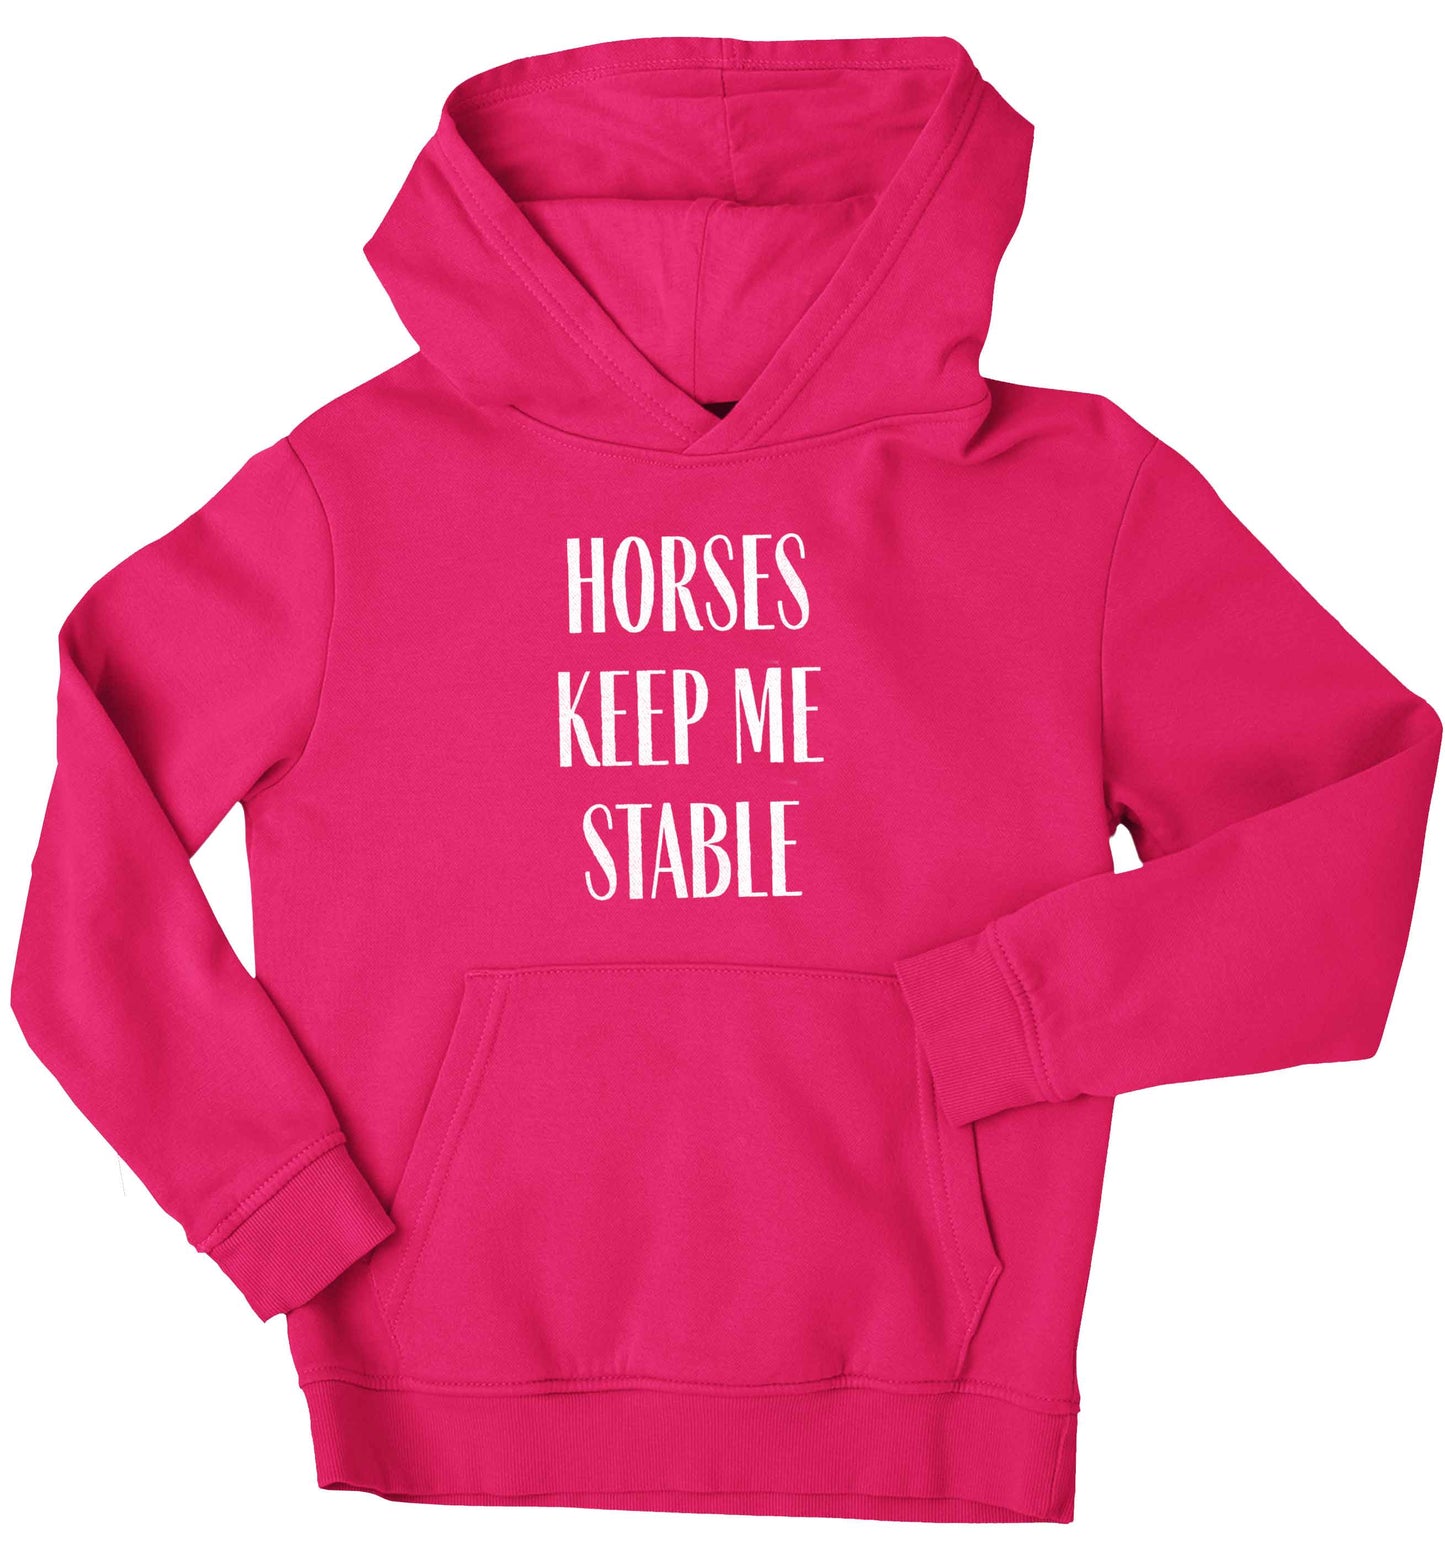 Horses keep me stable children's pink hoodie 12-13 Years